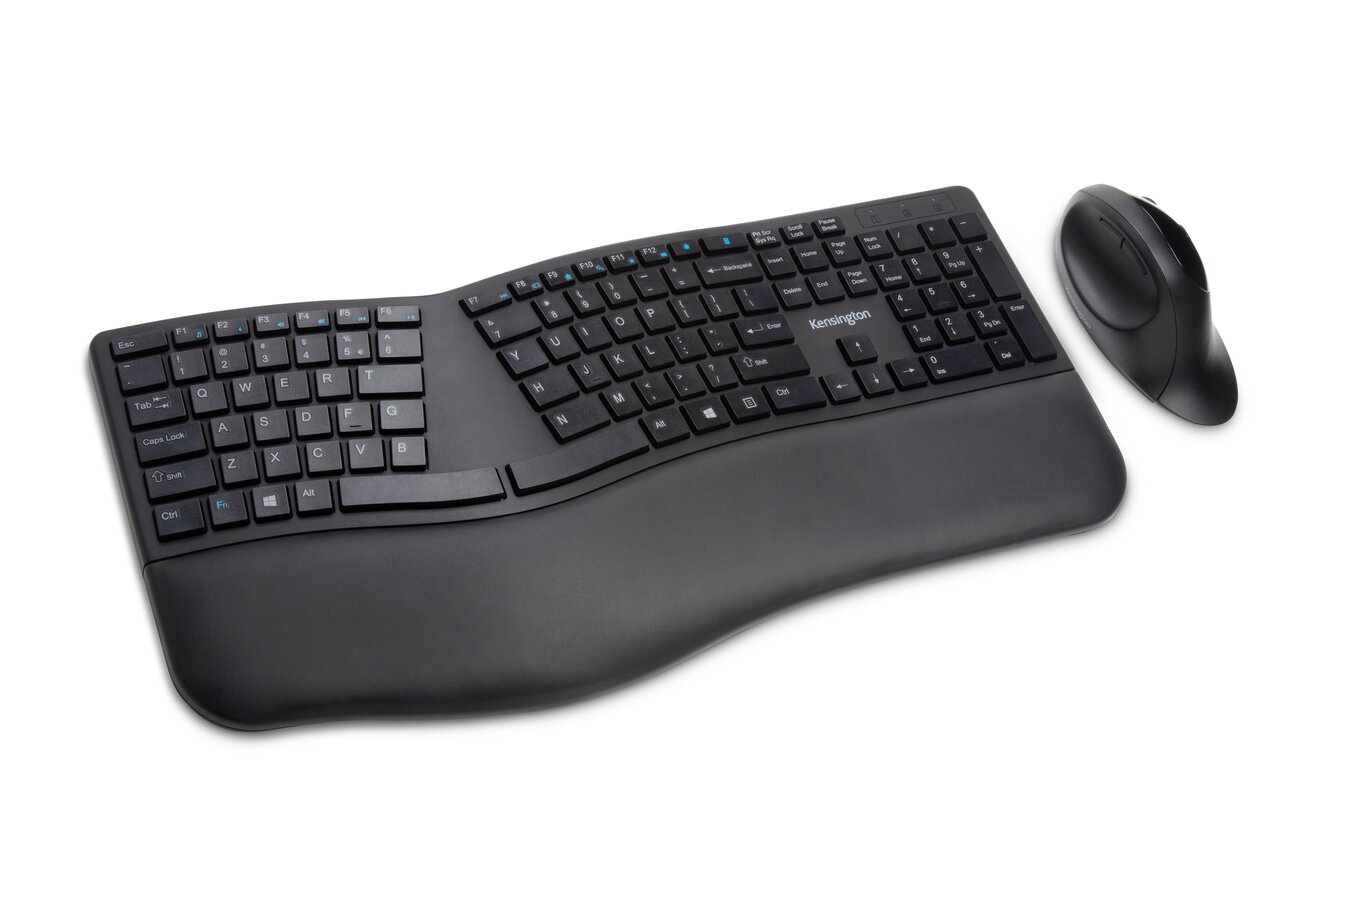 Clavier ergonomique : notre avis sur les meilleurs claviers ergo